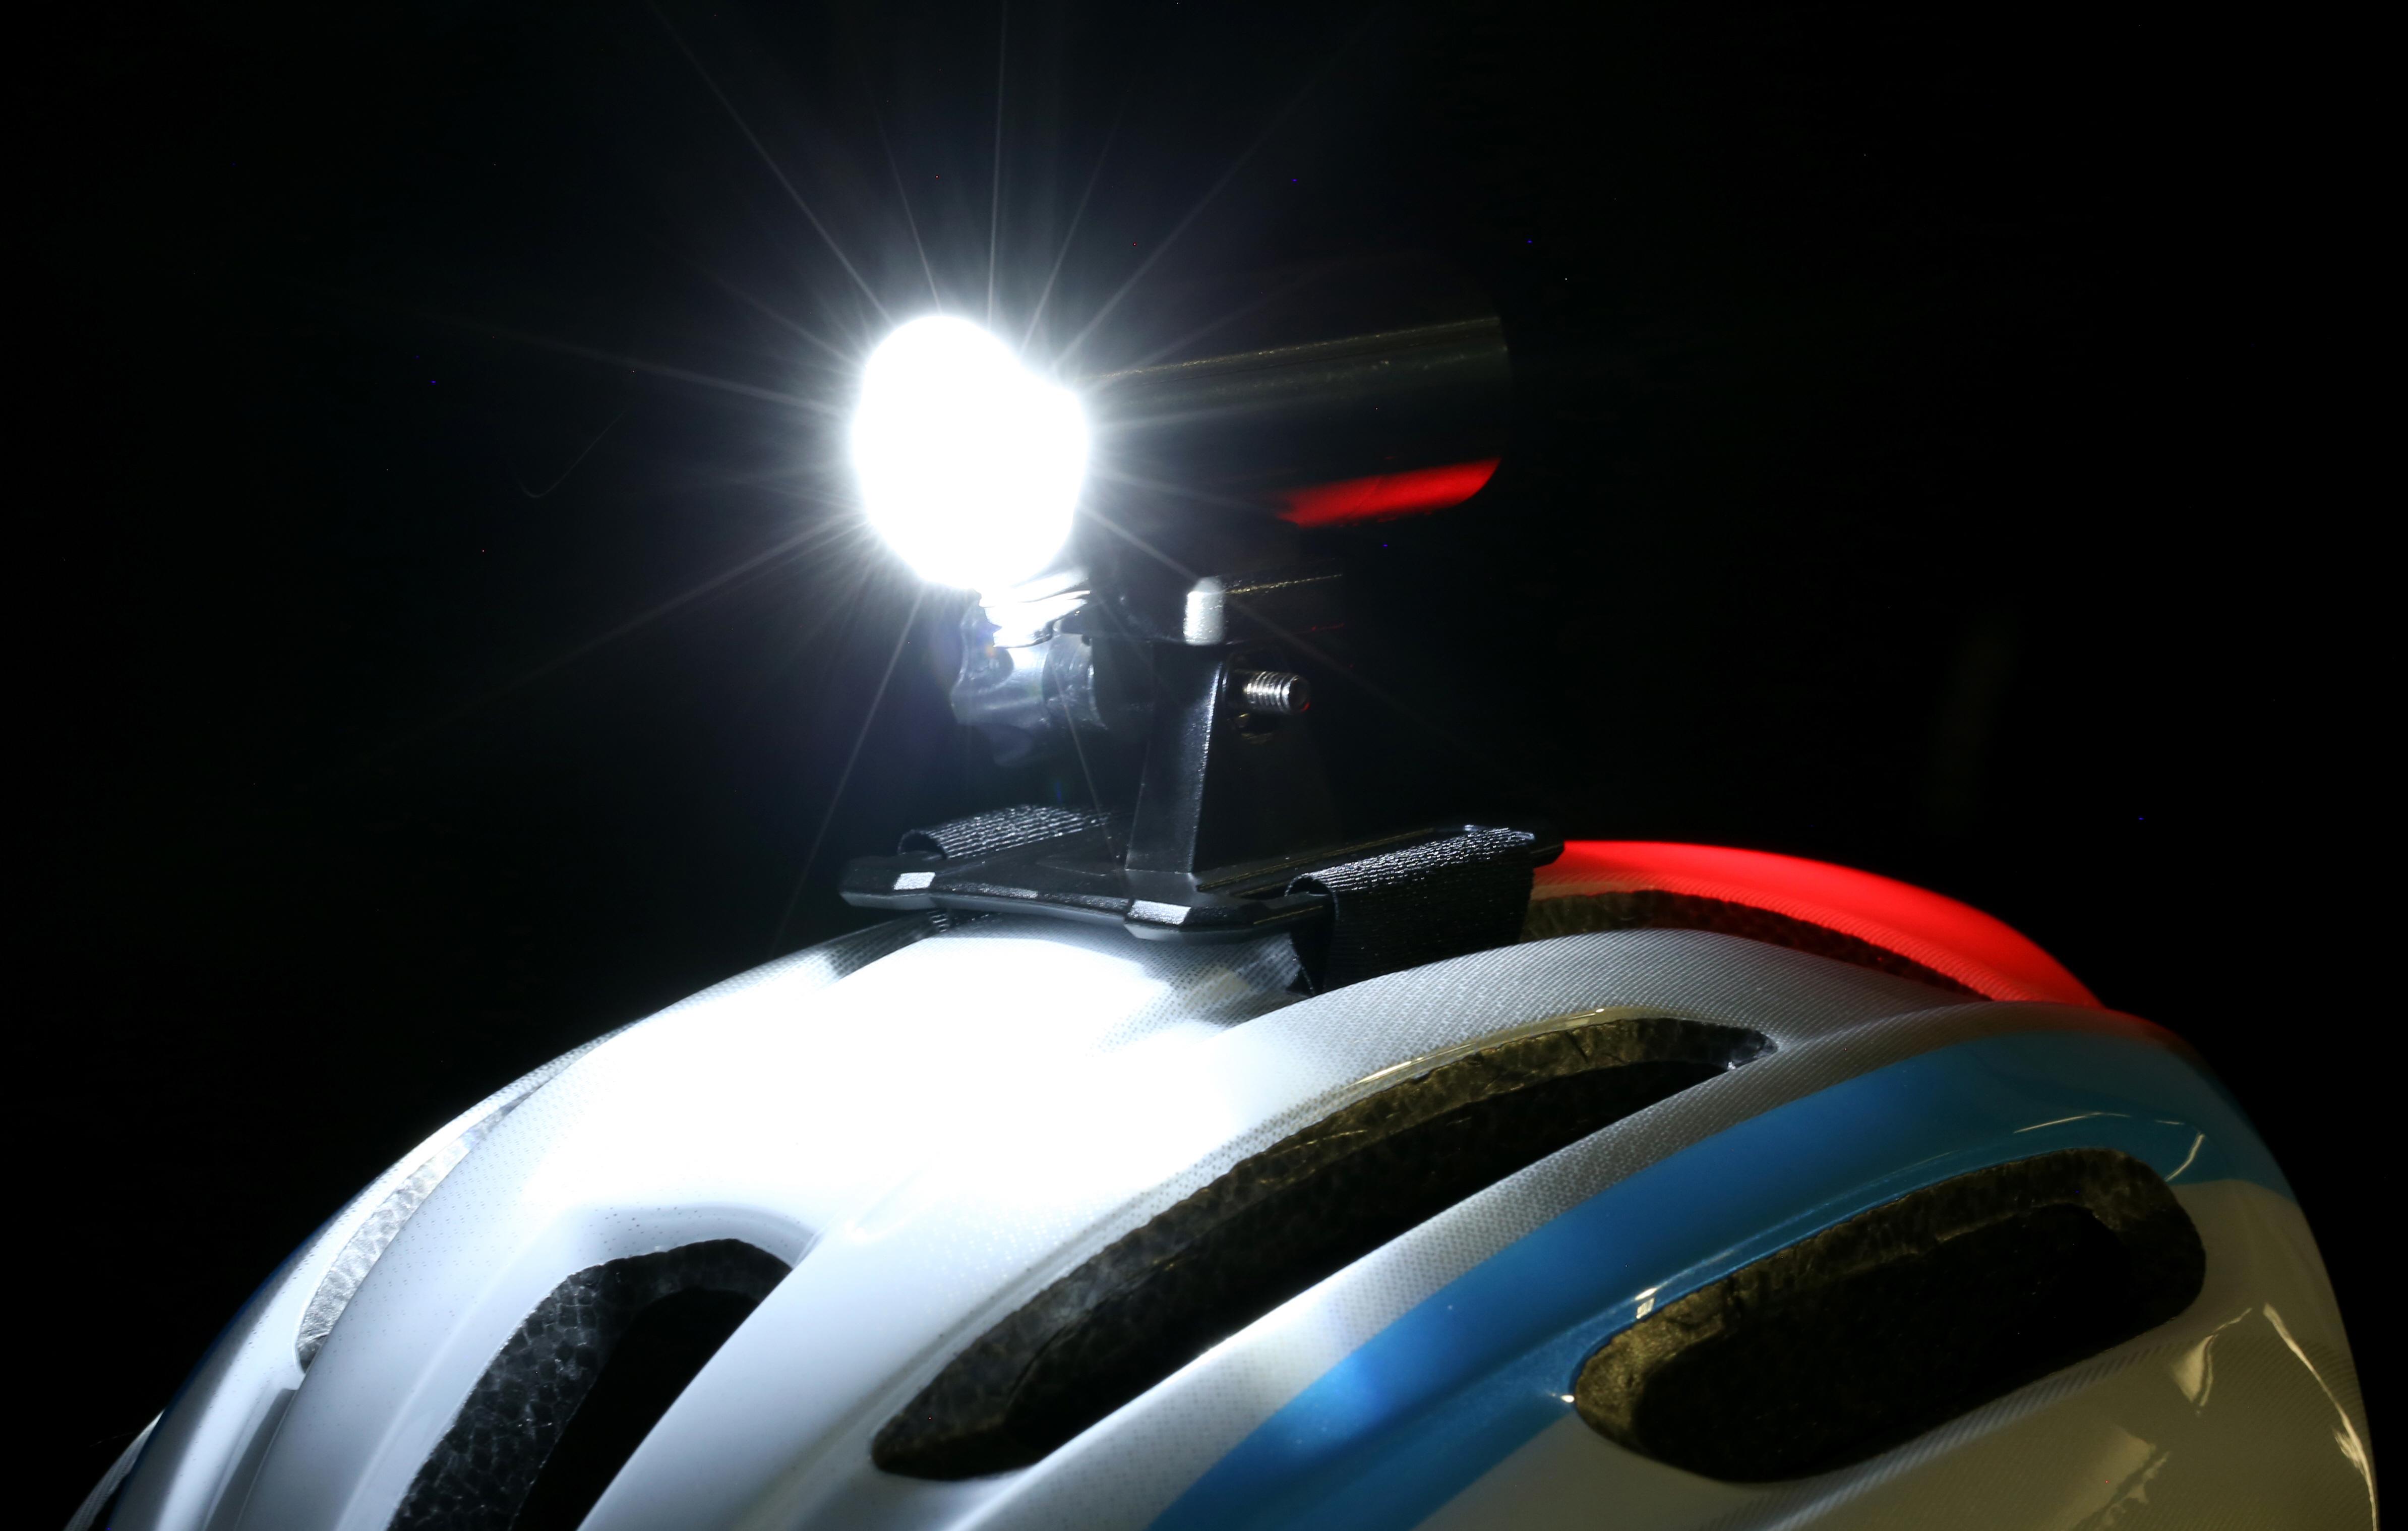 cycle helmet lights uk